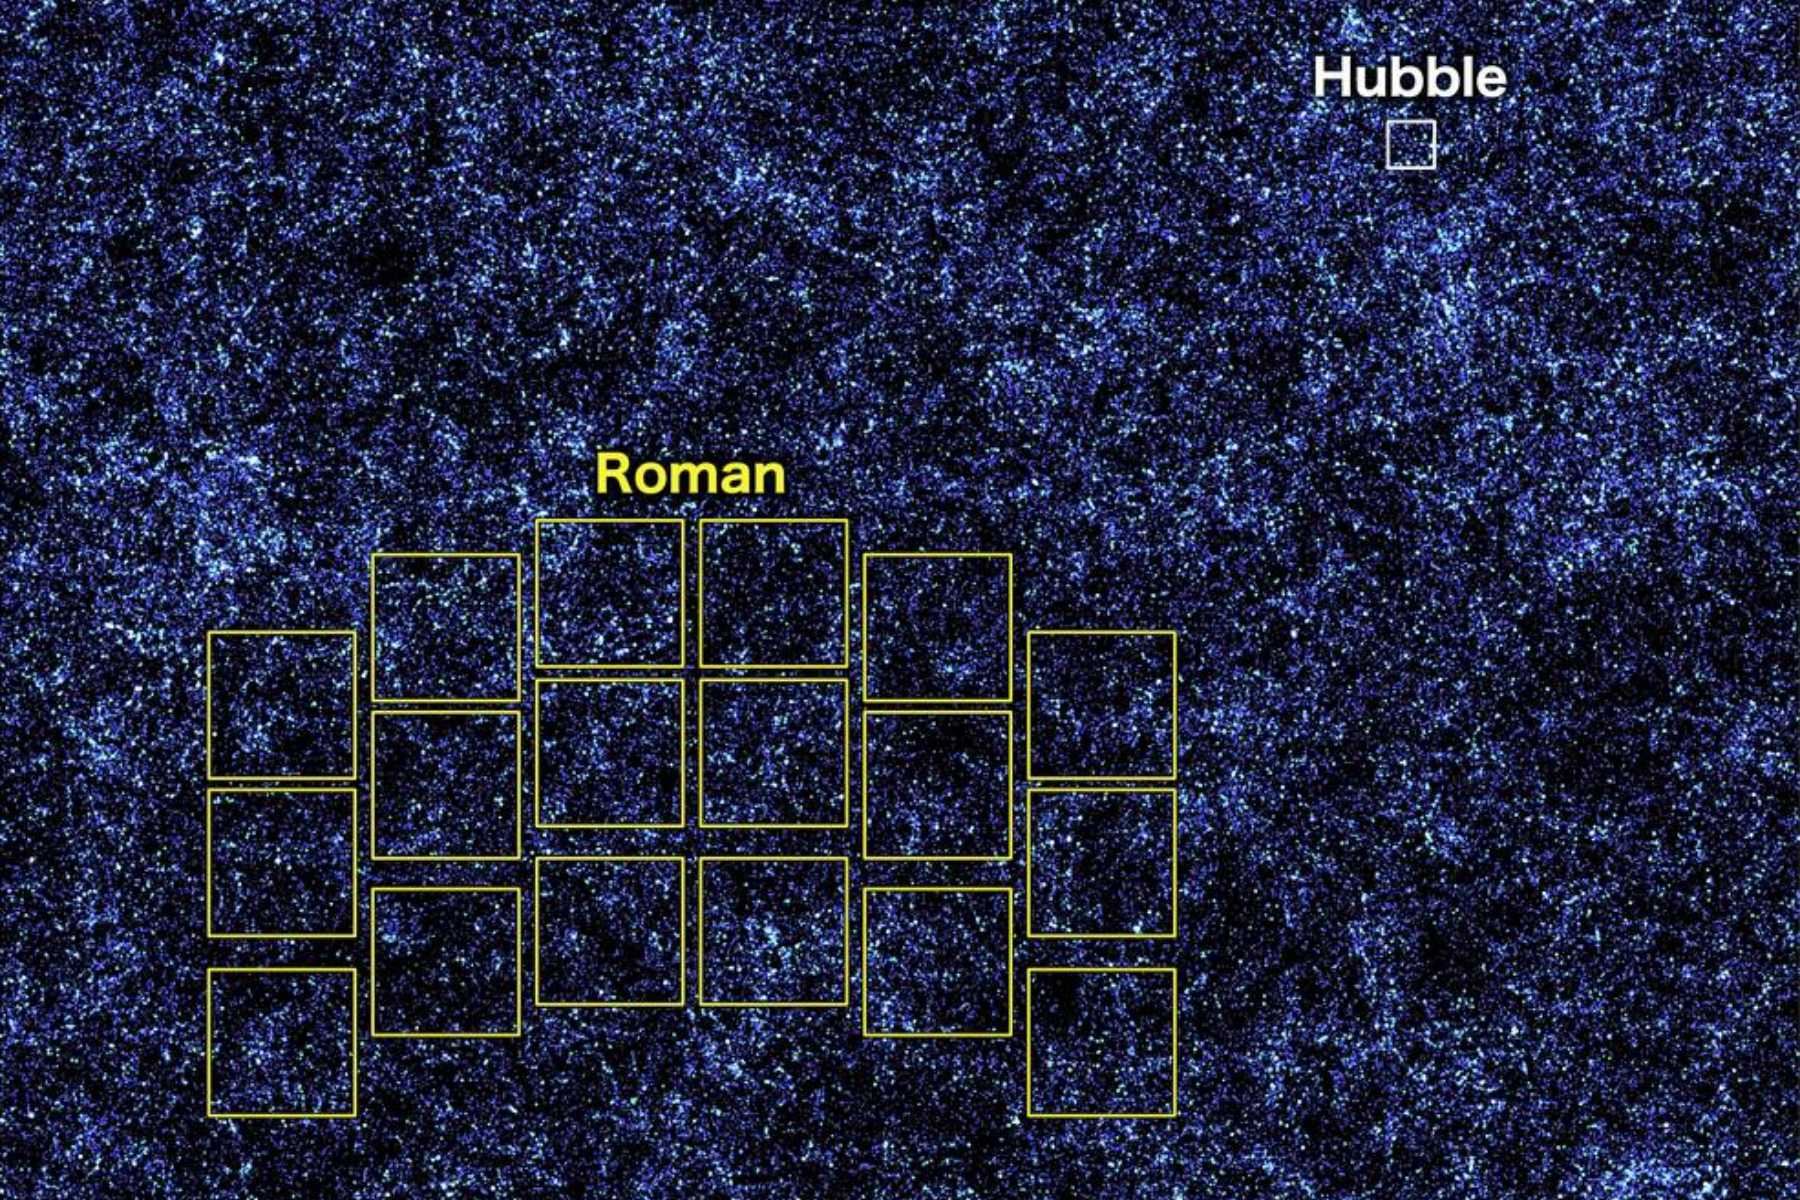 La combinación de la vista panorámica del Roman con la cobertura de longitud de onda más amplia del Hubble y las observaciones más detalladas del Webb ofrecerá una visión más completa del universo. Foto: NASA